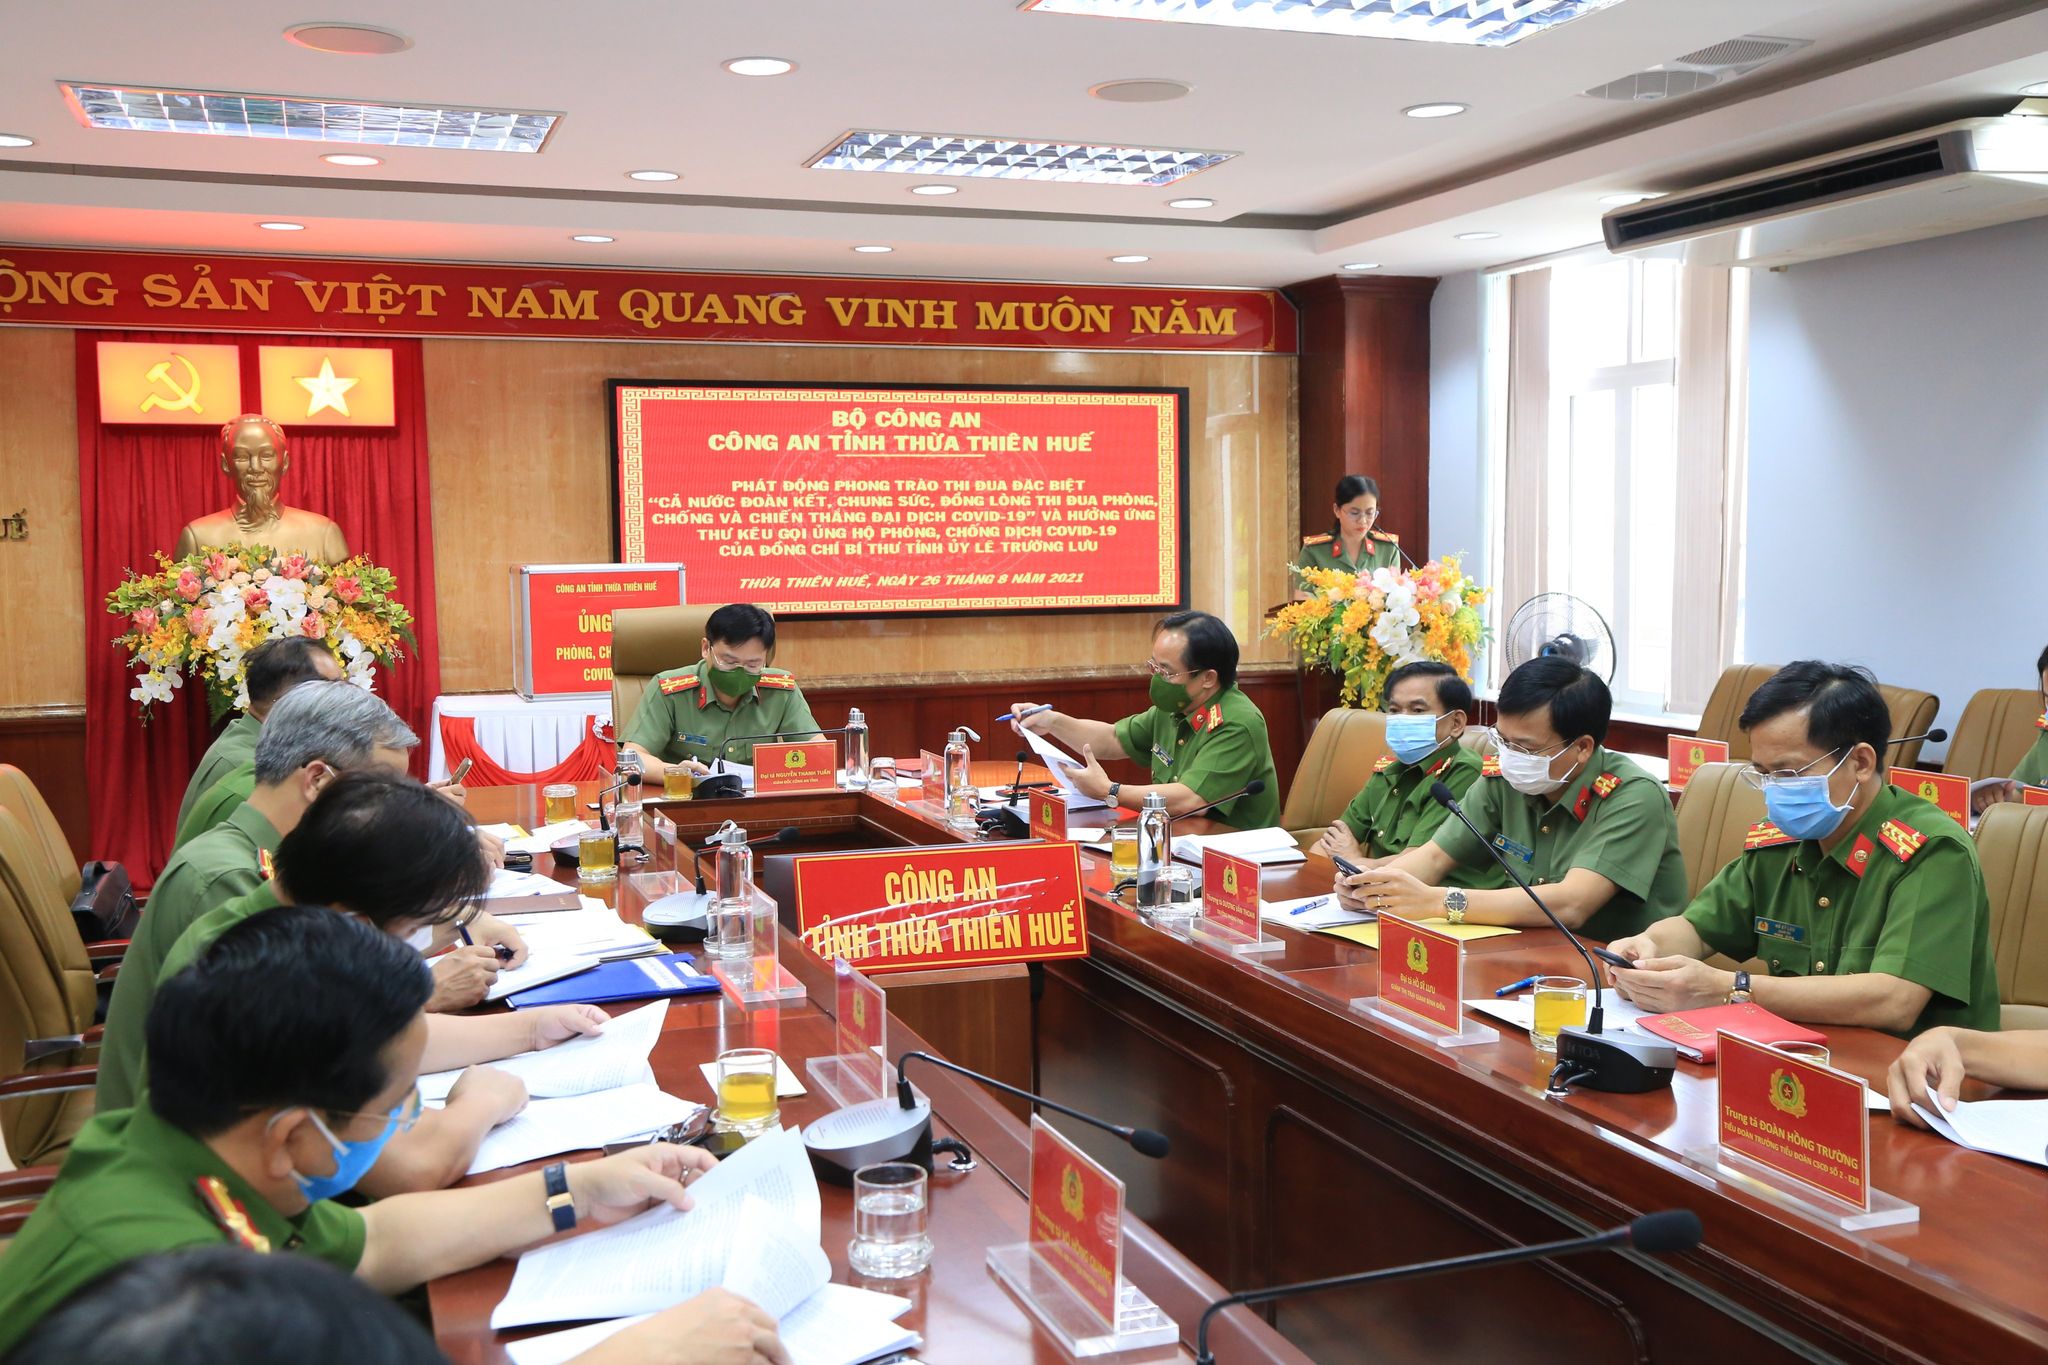 Công an tỉnh Thừa Thiên - Huế tổ chức phát động hưởng ứng phong trào thi đua đặc biệt vào chiều ngày 26/7.